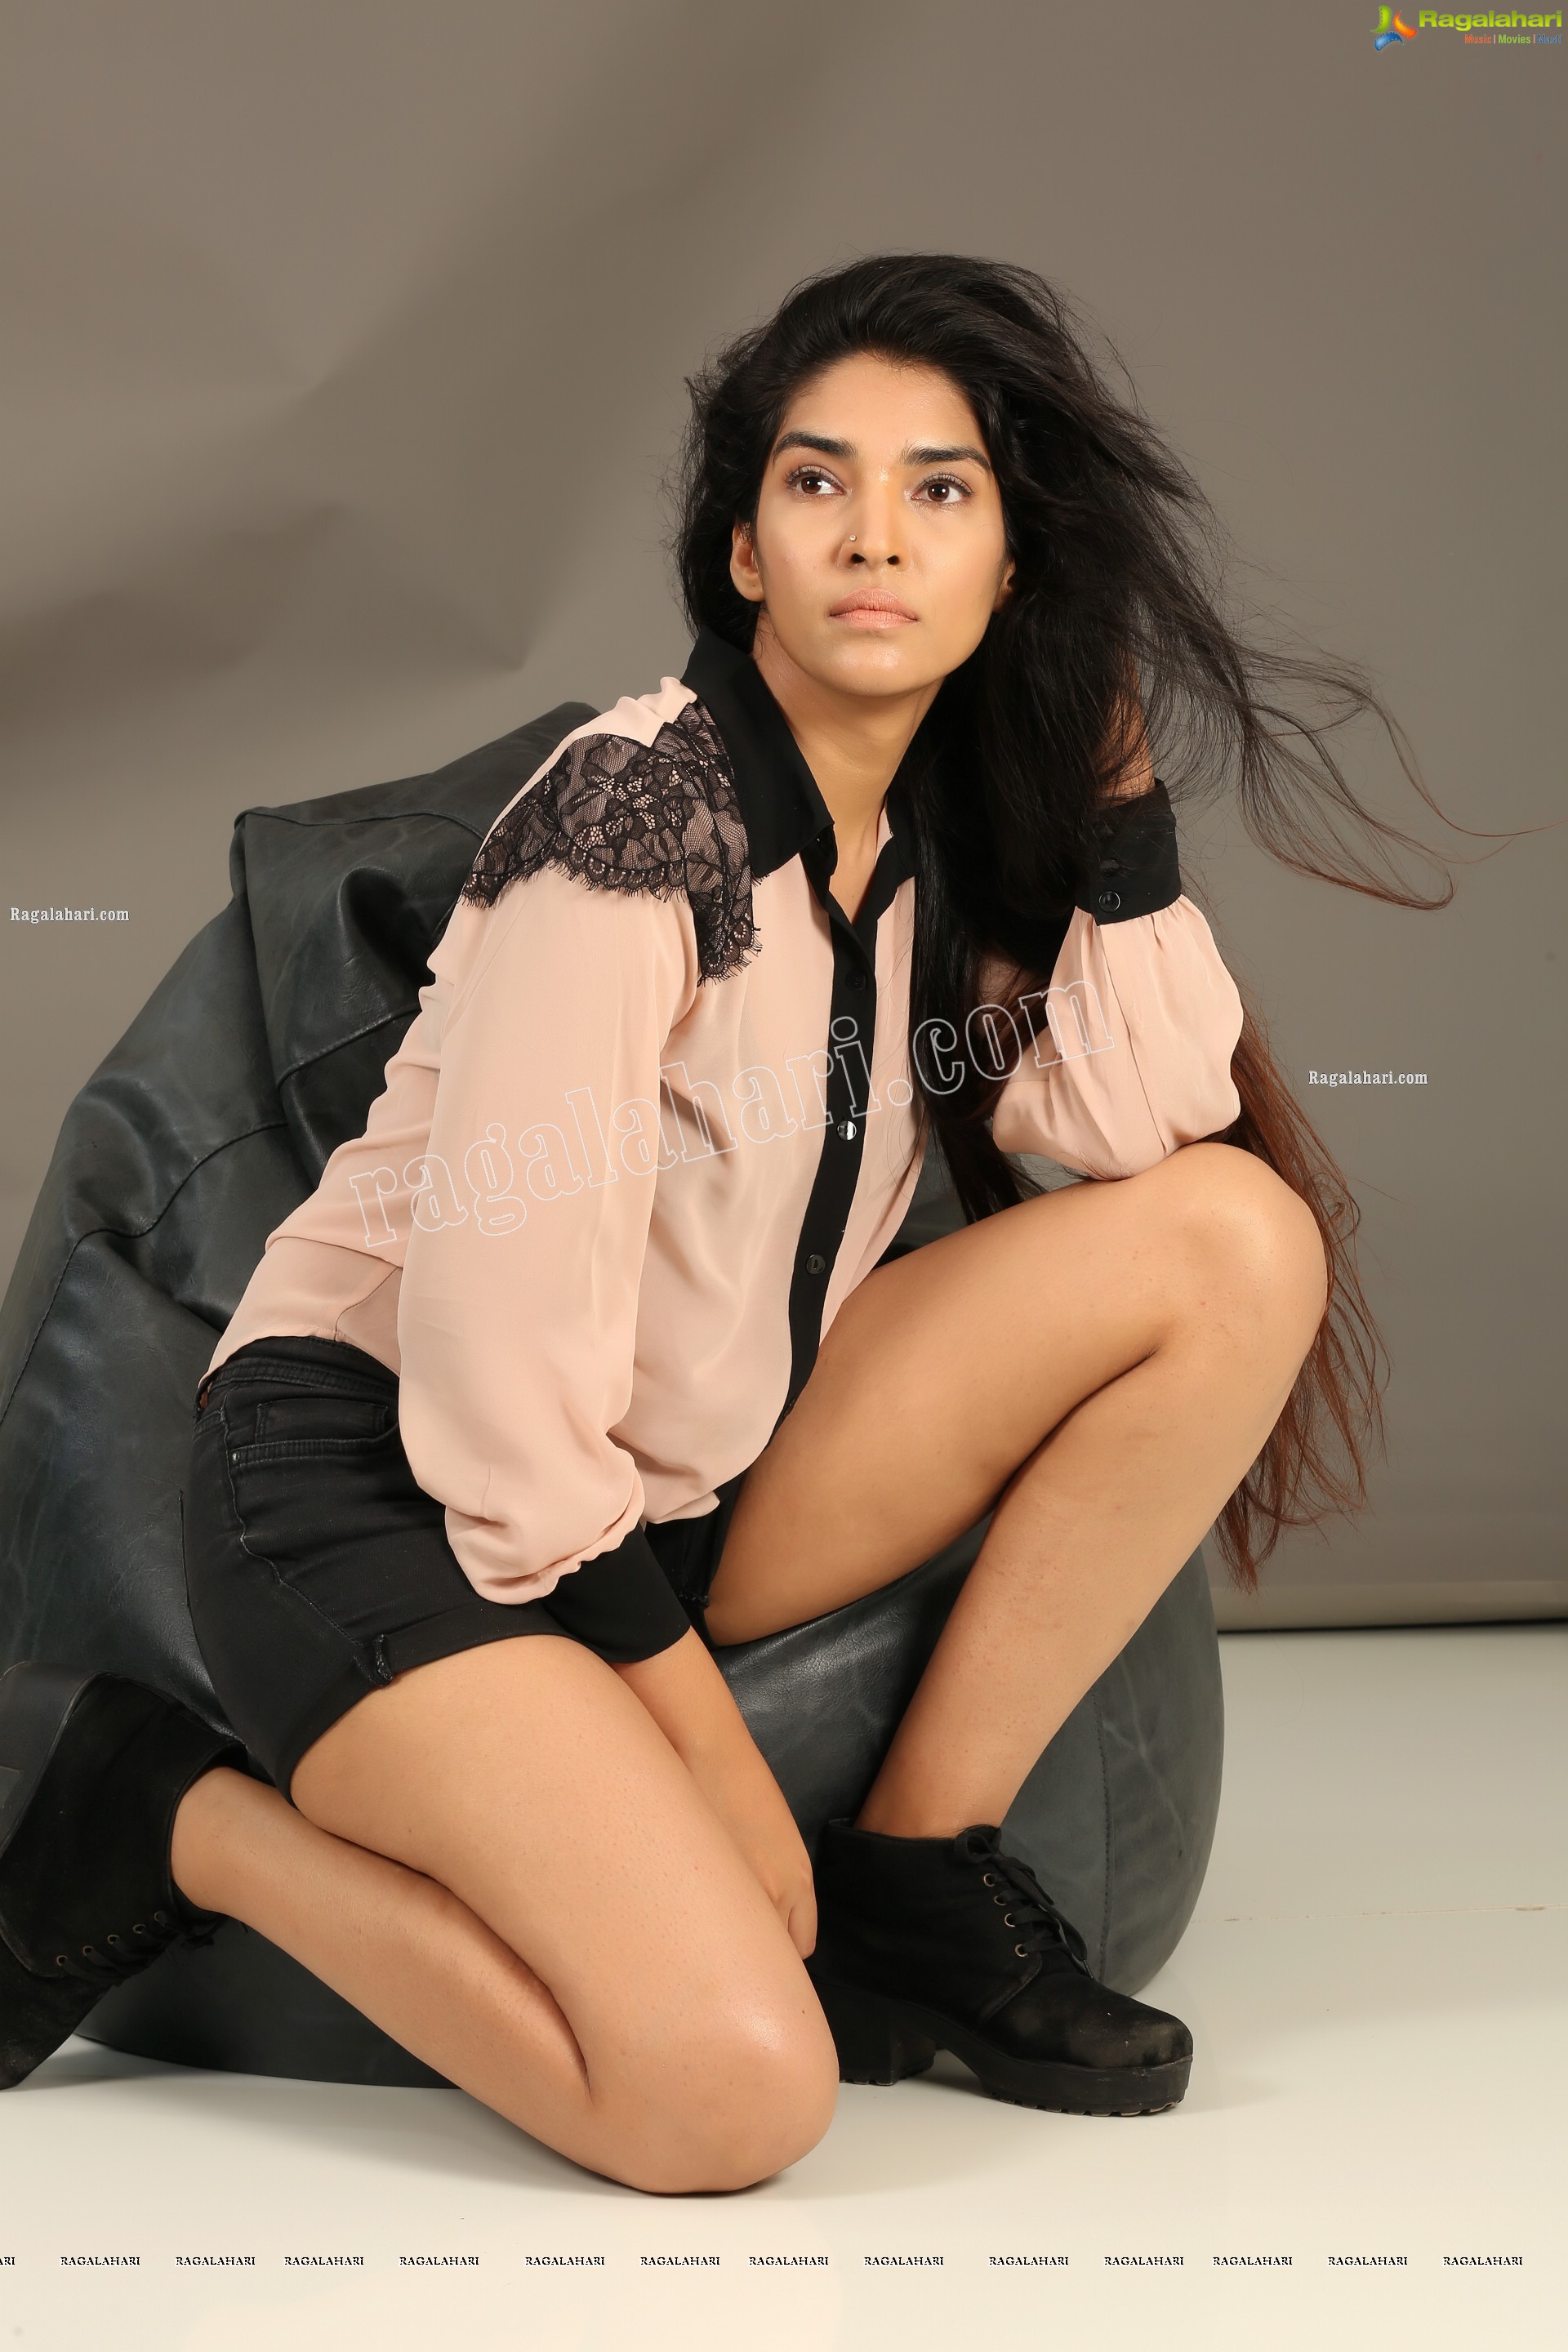 Supraja Narayan in Pastel Pink Shirt and Black Shorts, Exclusive Photo Shoot